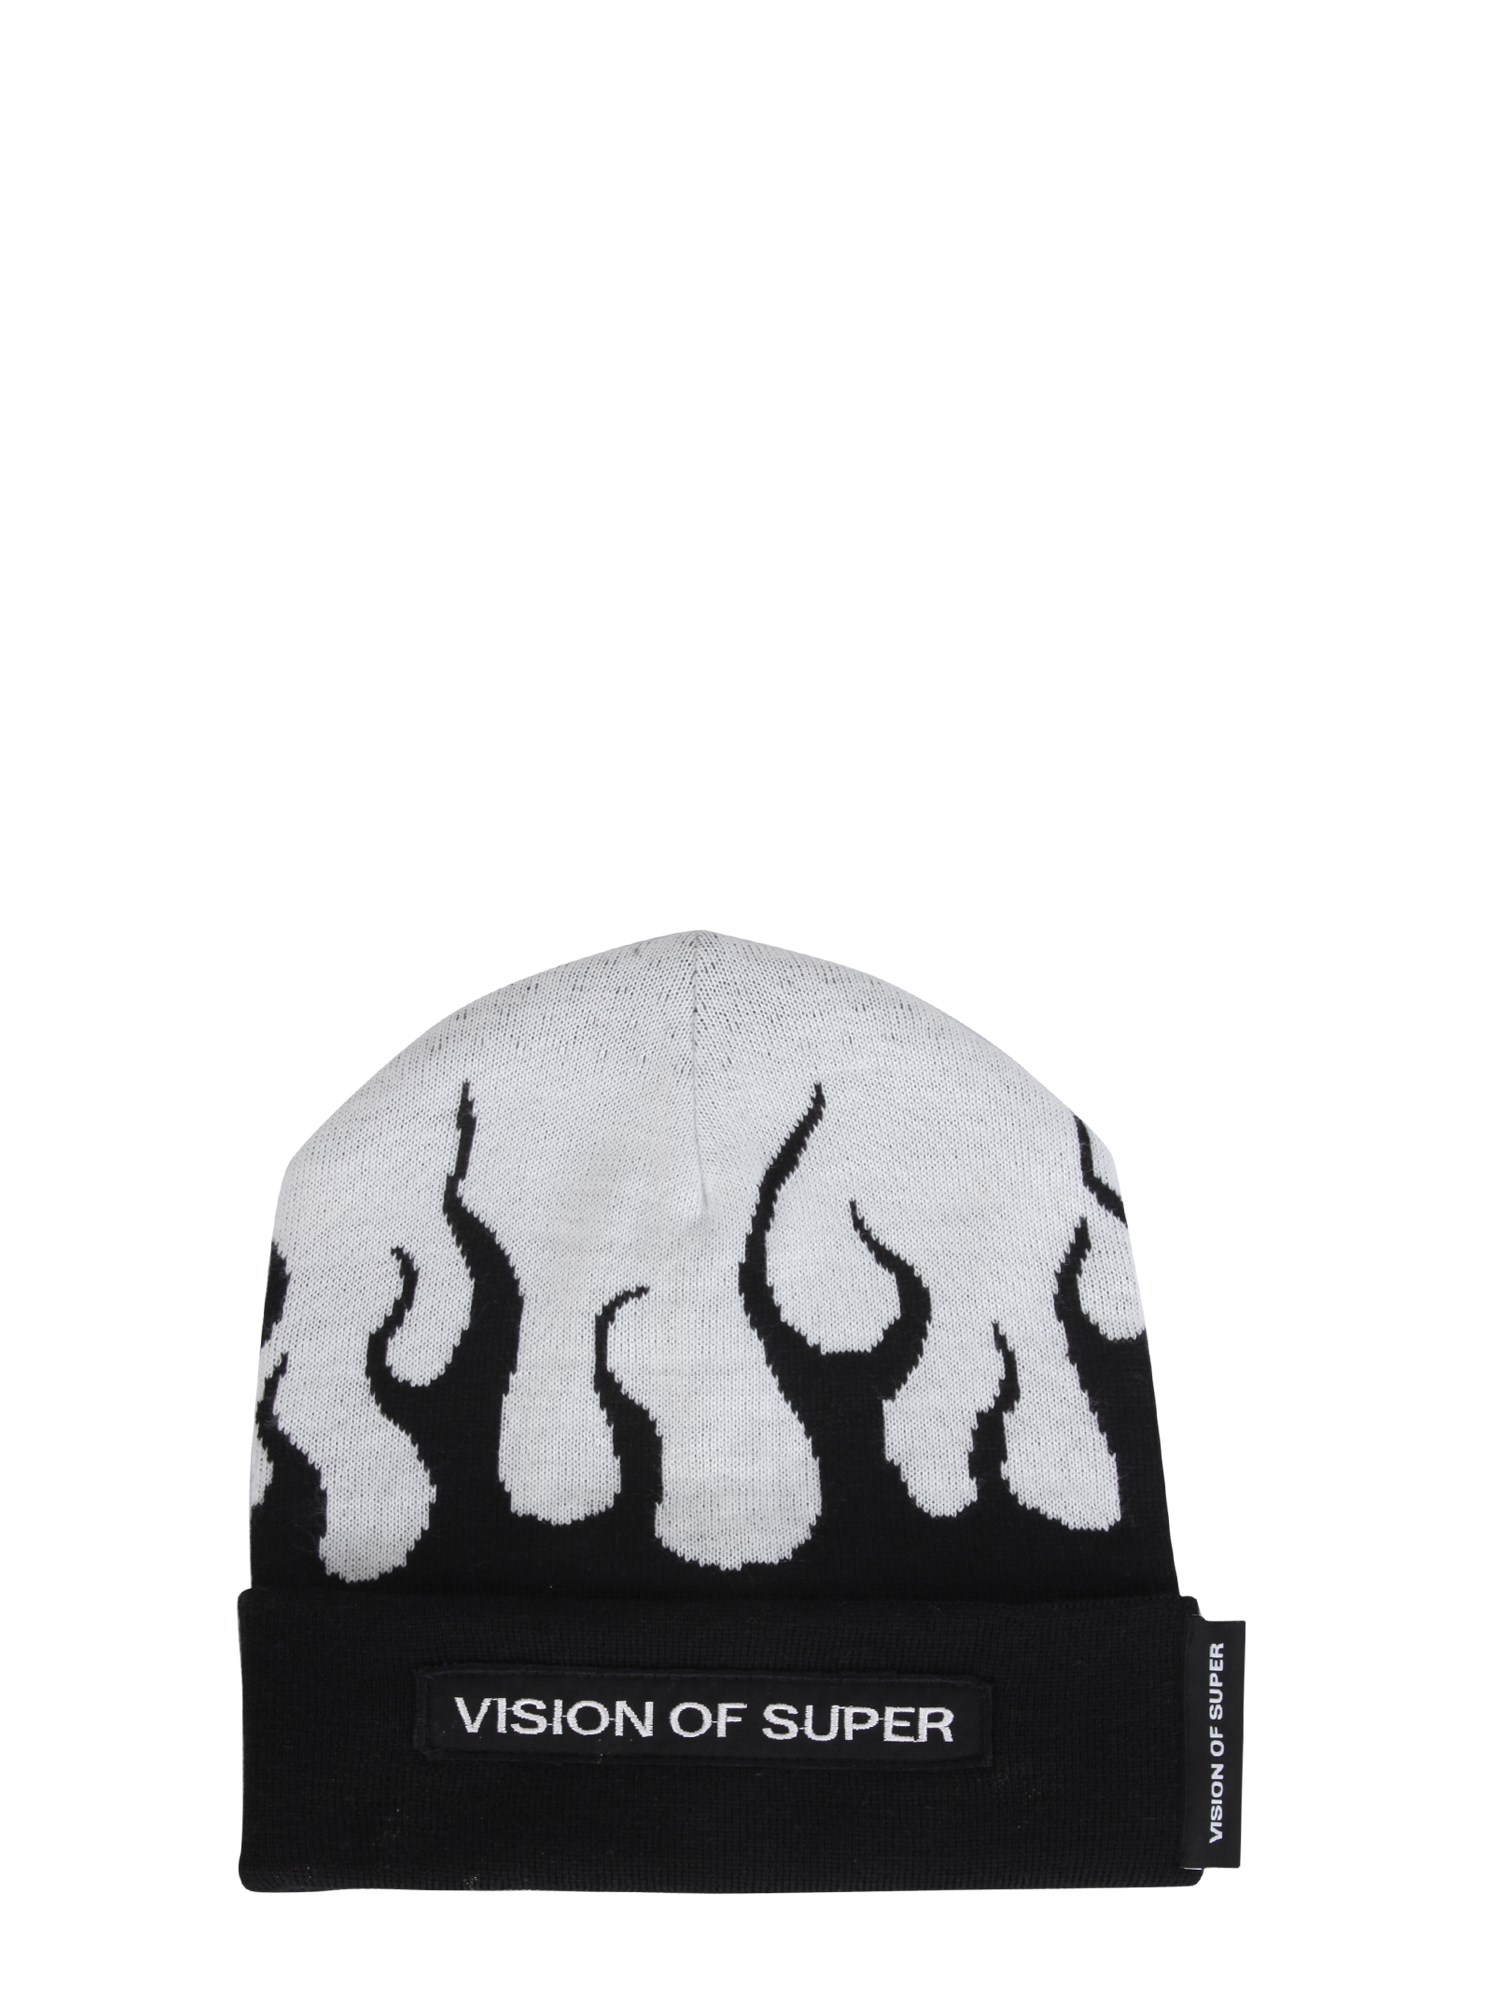 vision of super wool blend hat